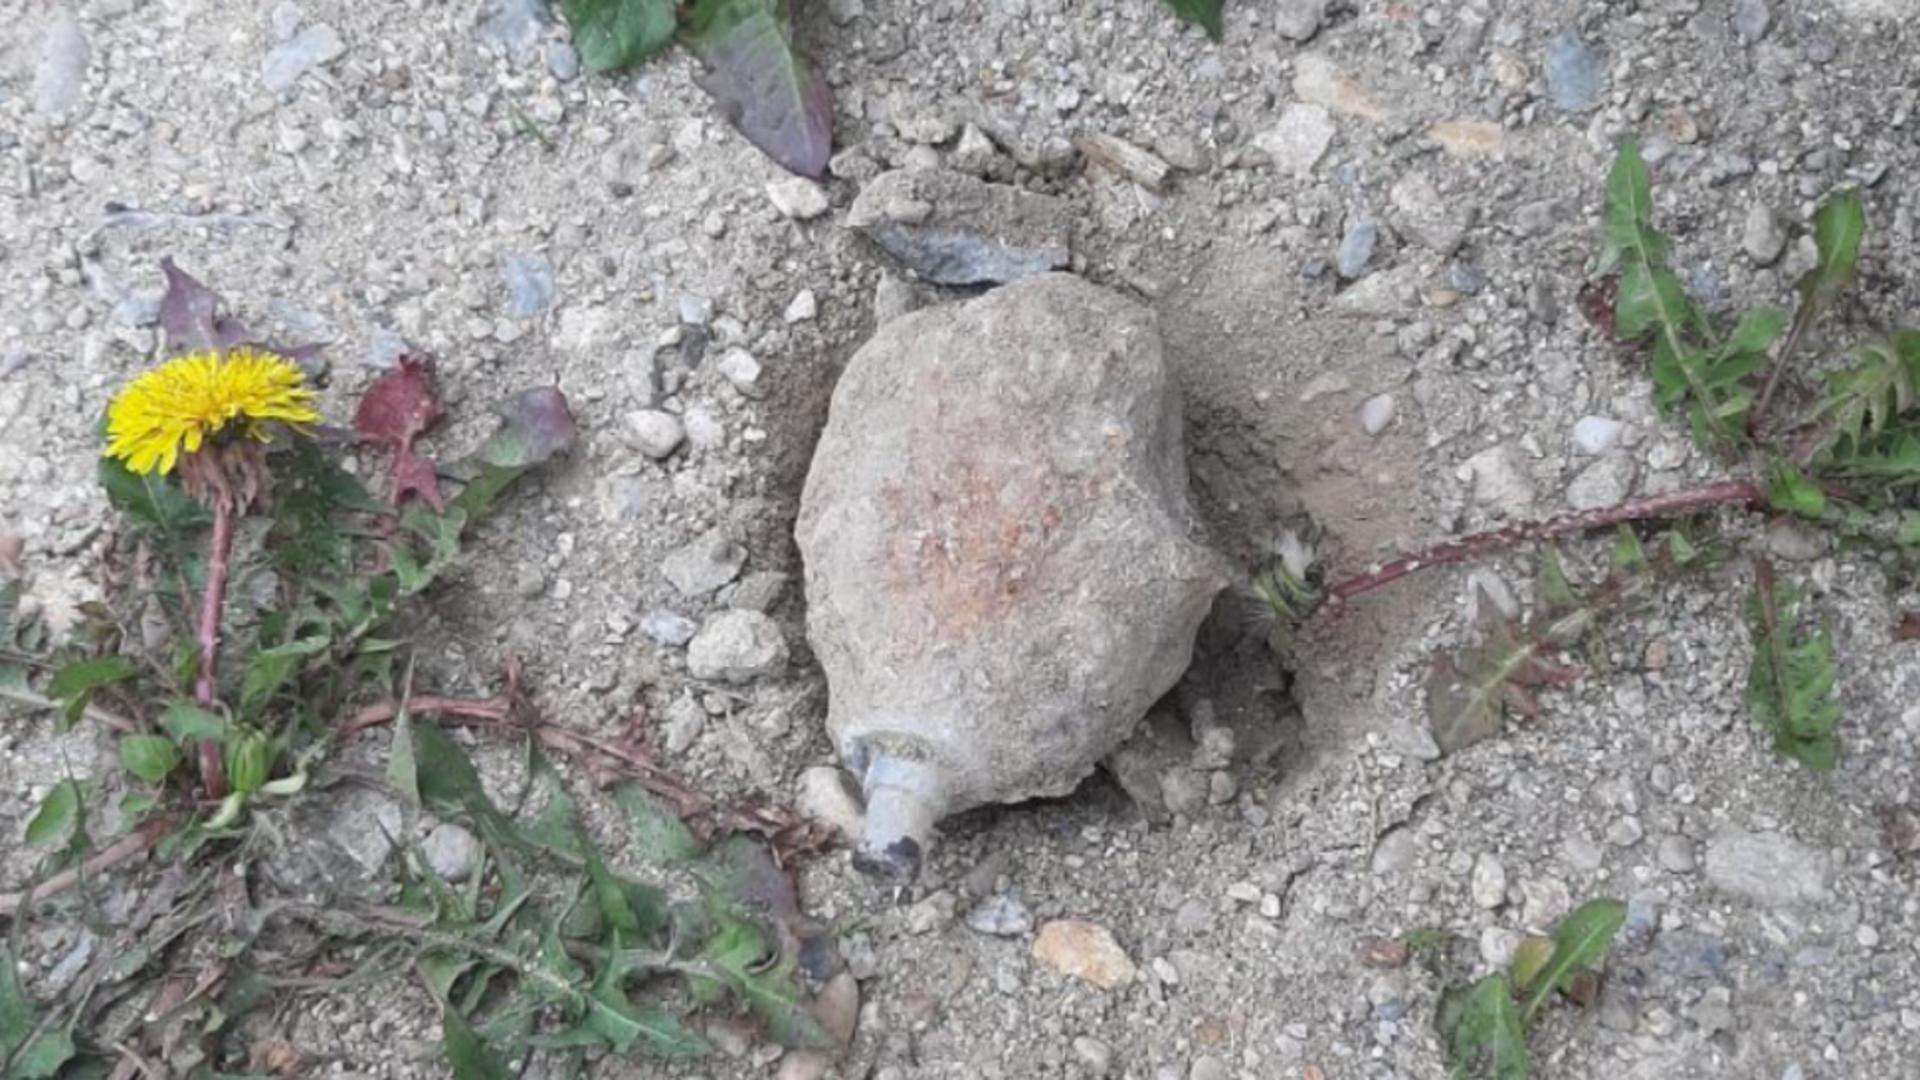 Grenadă neexplodată, găsită în curtea unui localnic din judeţul Vâlcea. Anunțul ISU